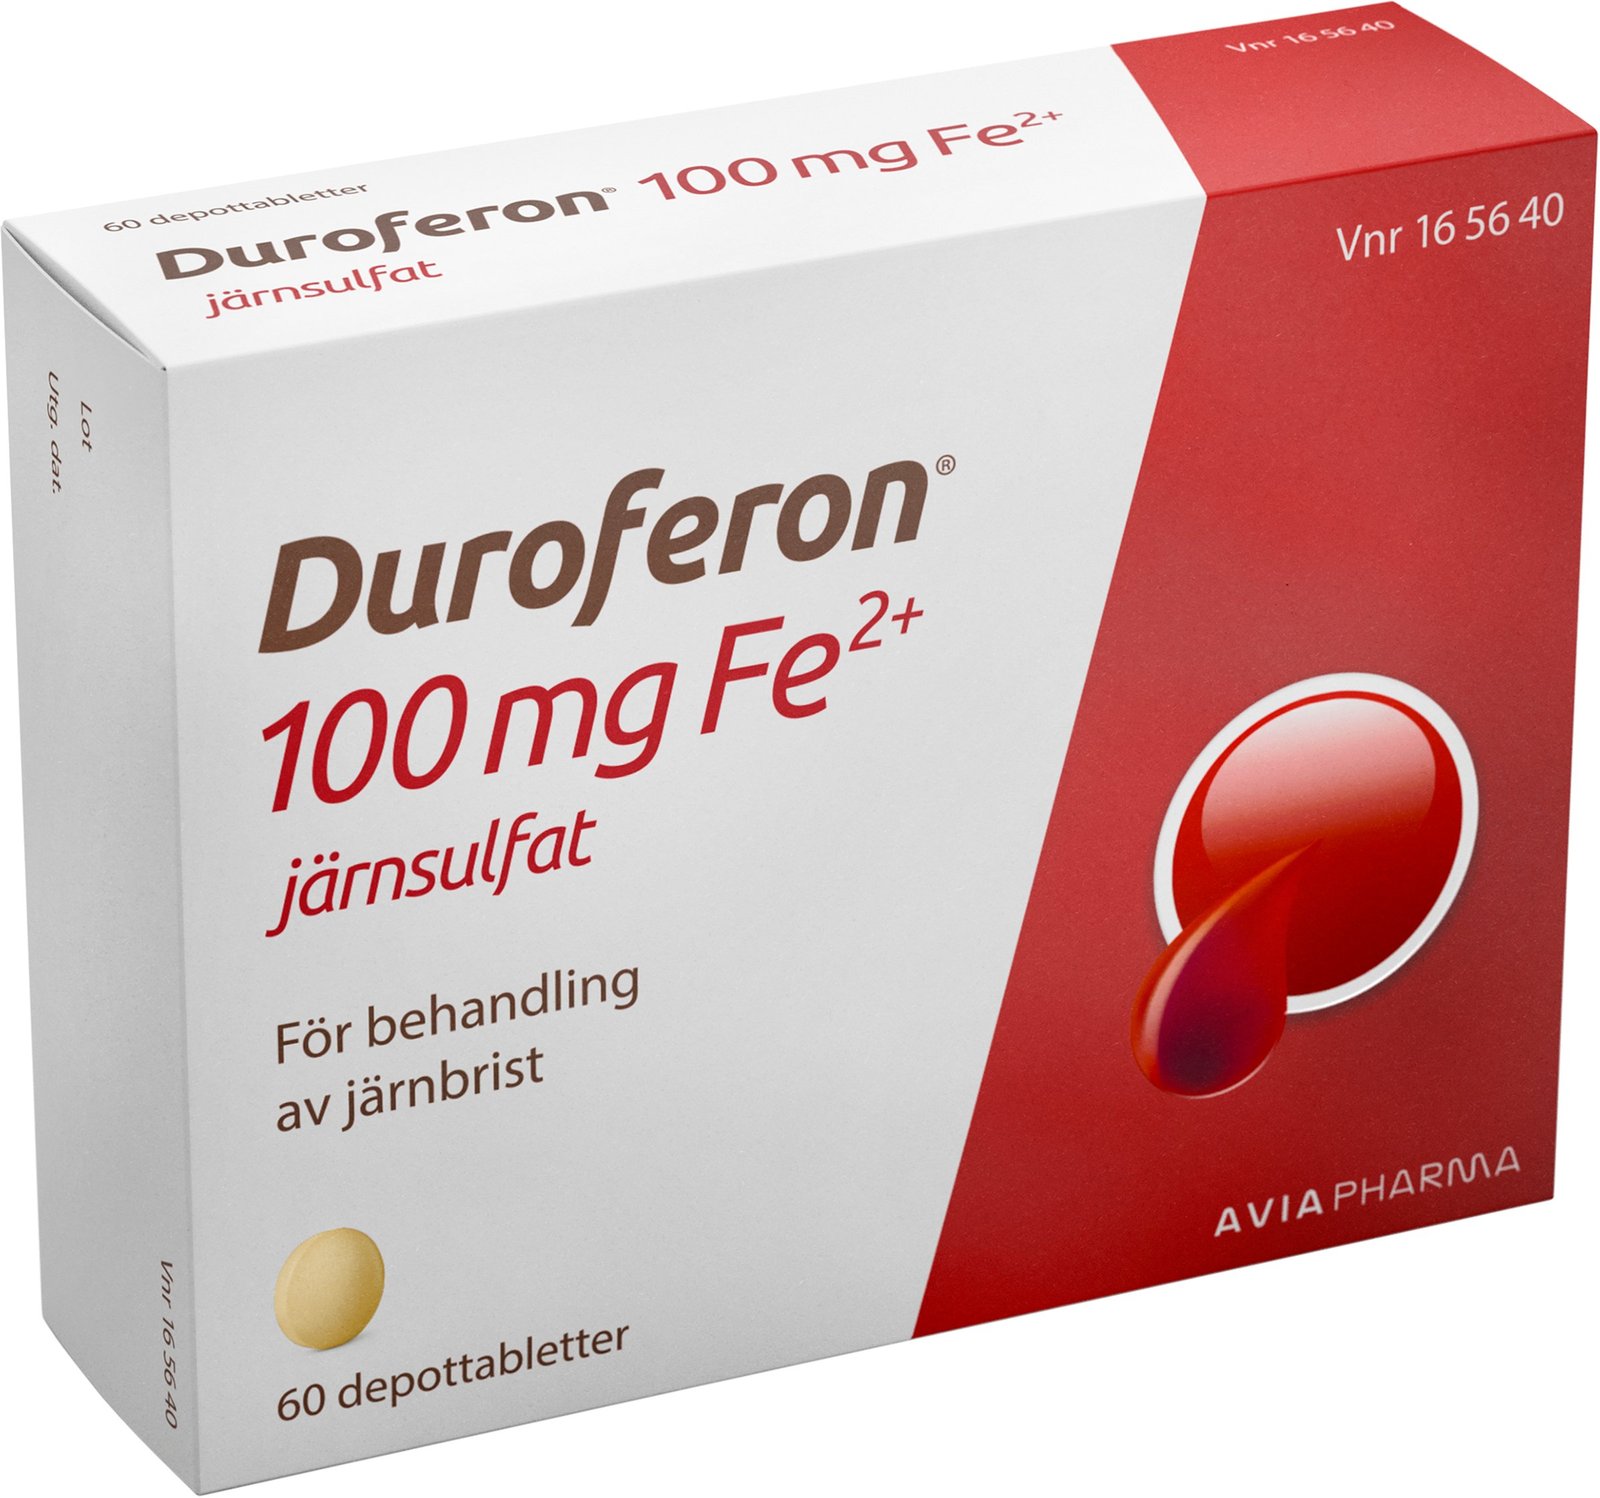 Duroferon 100mg Fe2+ Järnsulfat 60 depottabletter